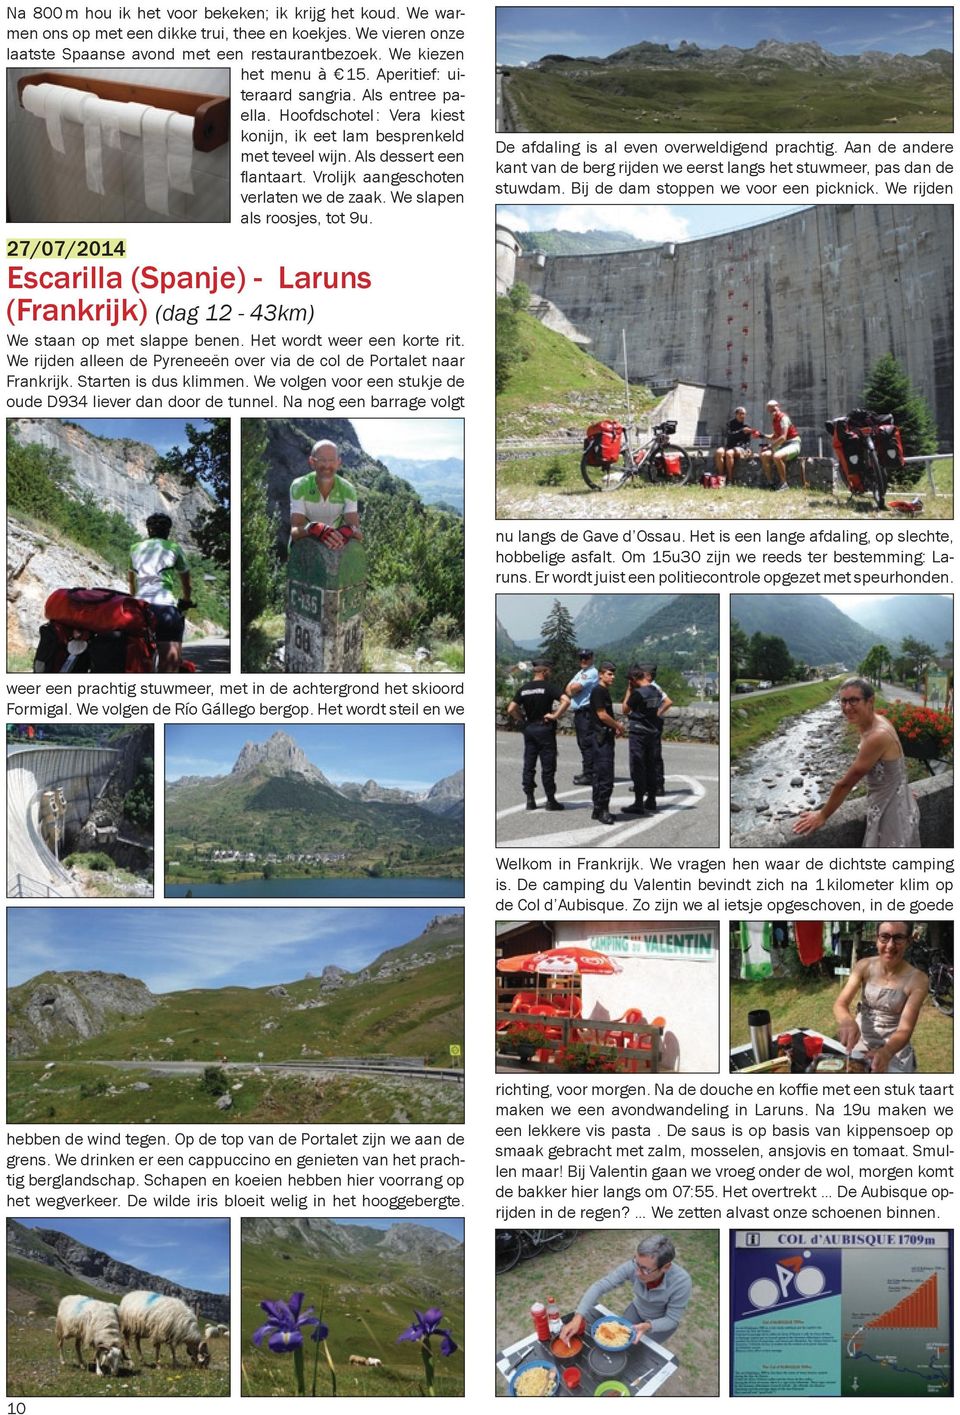 We slapen als roosjes, tot 9u. 27/07/2014 Escarilla (Spanje) - Laruns (Frankrijk) (dag 12-43km) We staan op met slappe benen. Het wordt weer een korte rit.